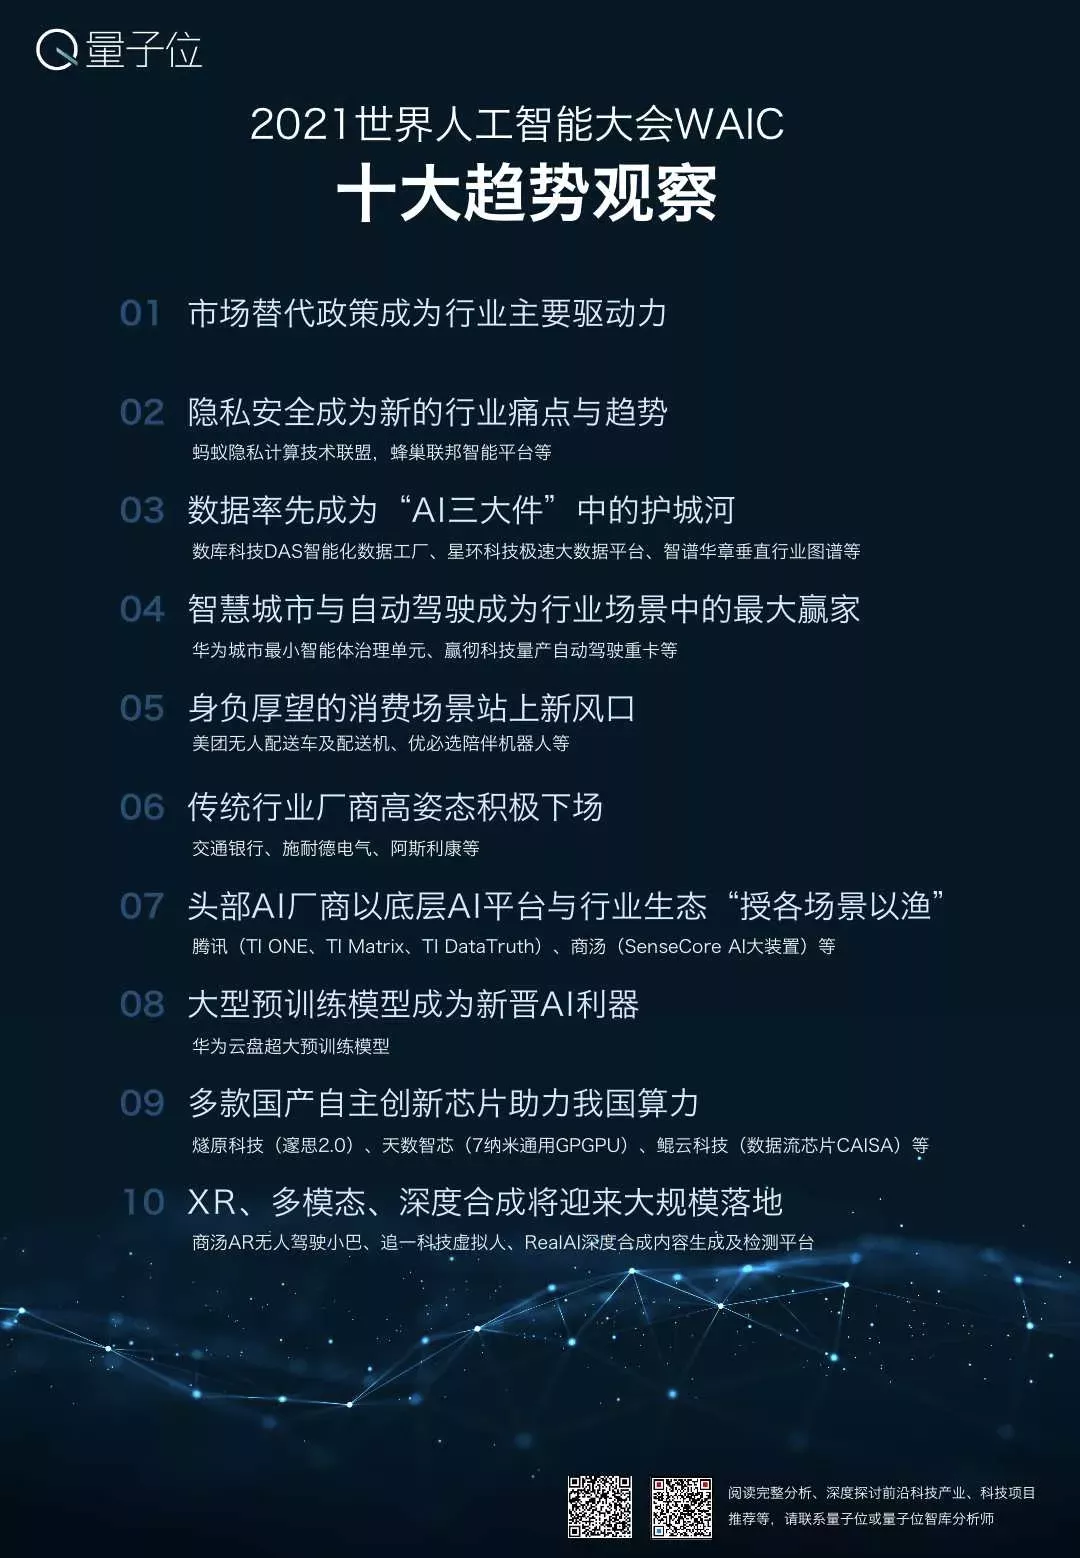 2021中国AI产业10大趋势，一分钟看明白 | WAIC2021